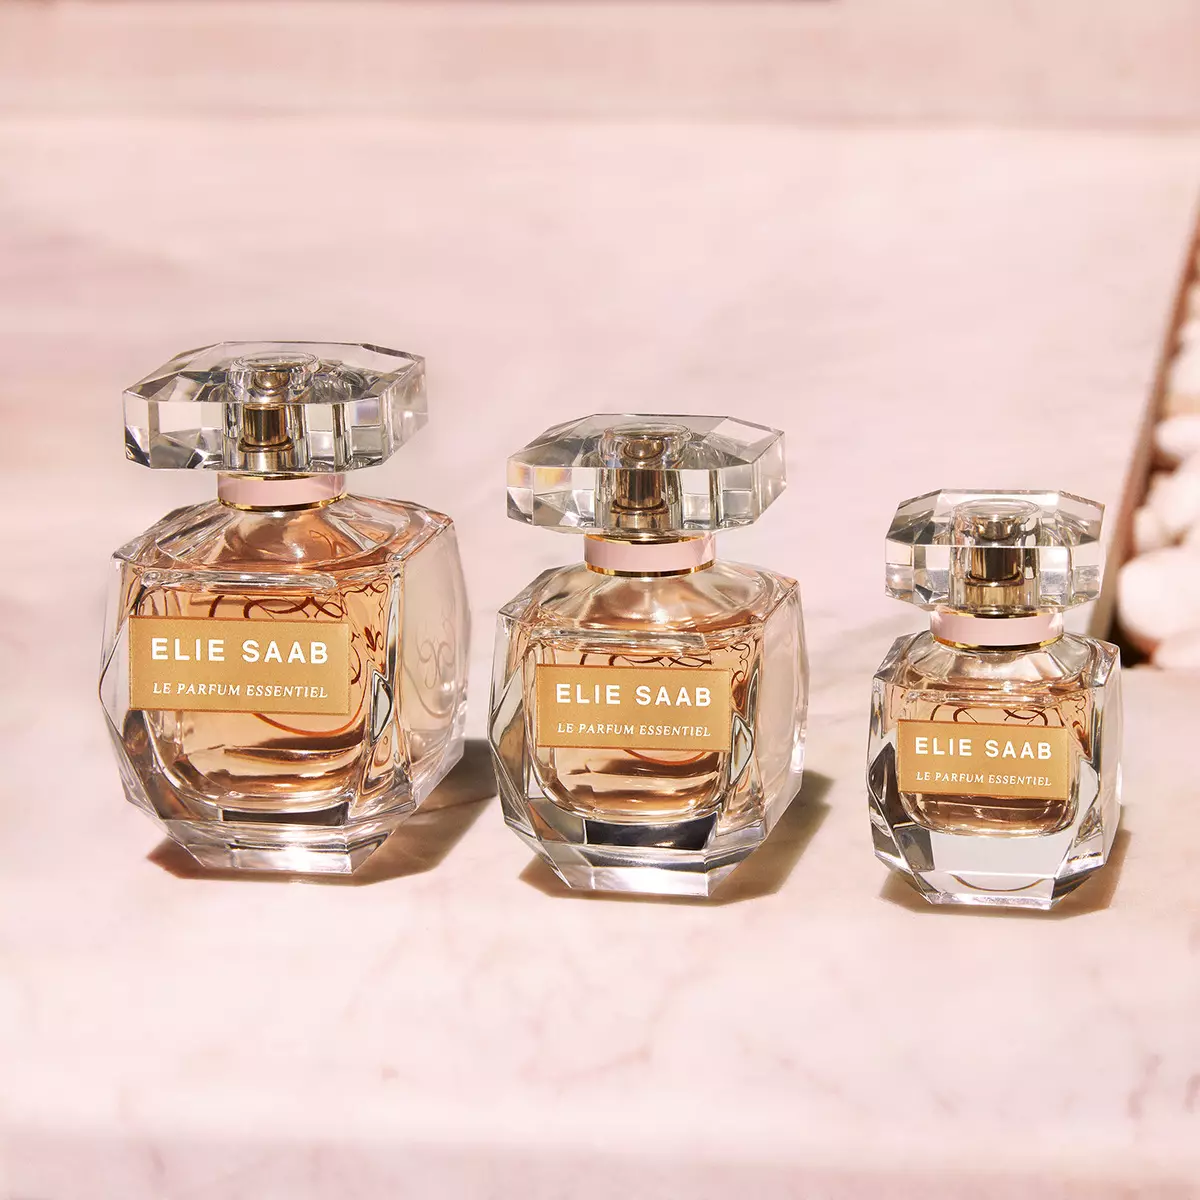 Perfum ELIE Saab: ଆତ୍ମାଙ୍କଠାରୁ Le Parfum Royal, Le Parfum Essentiel, ଝିଅକୁ ବର୍ତ୍ତମାନ ର, ଧଳା ରେ Le Parfum ଏବଂ େଶୗଚାଳୟ ଜଳ Rose Couture, ସମୀକ୍ଷା 25329_2